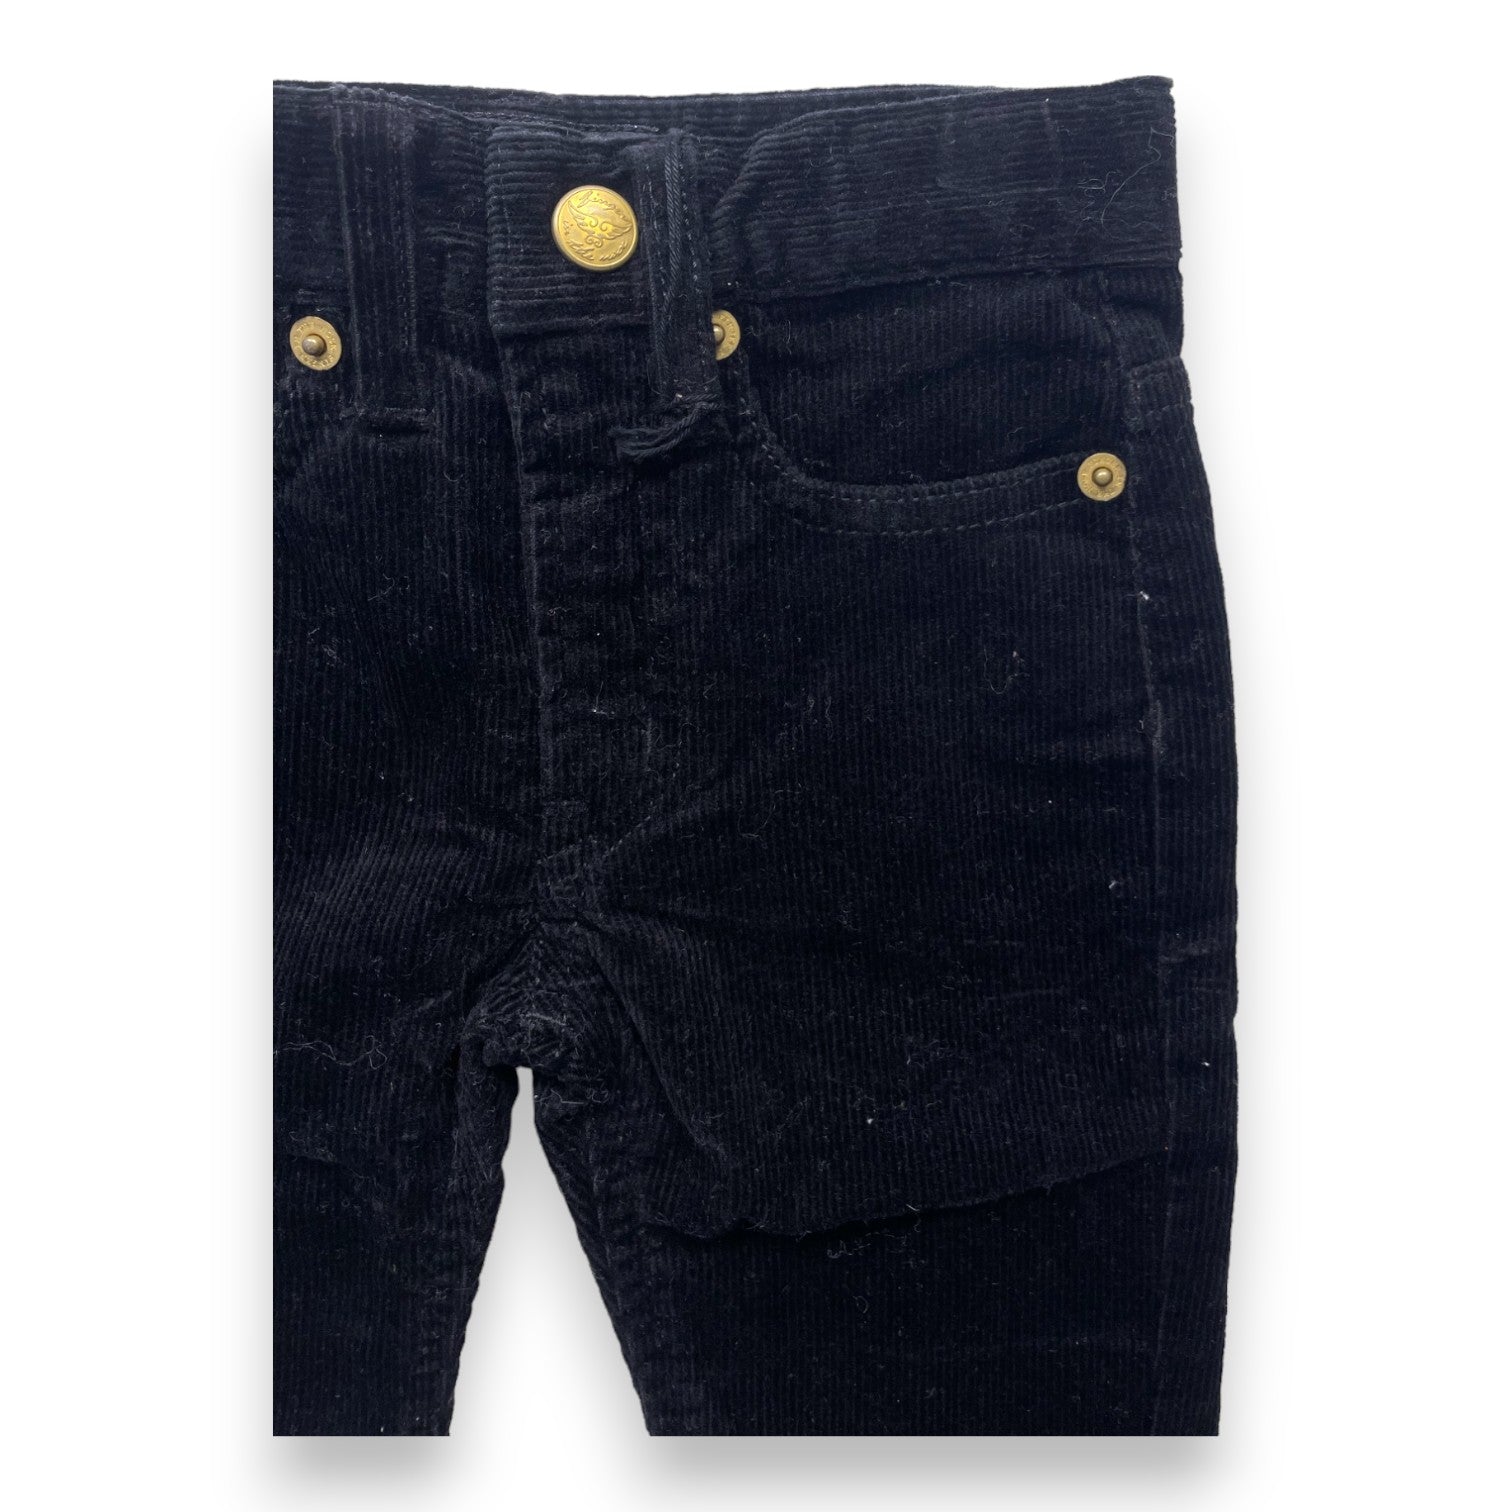 FINGER IN THE NOSE - Pantalon noir en velours côtelé (neuf) - 12/18 mois